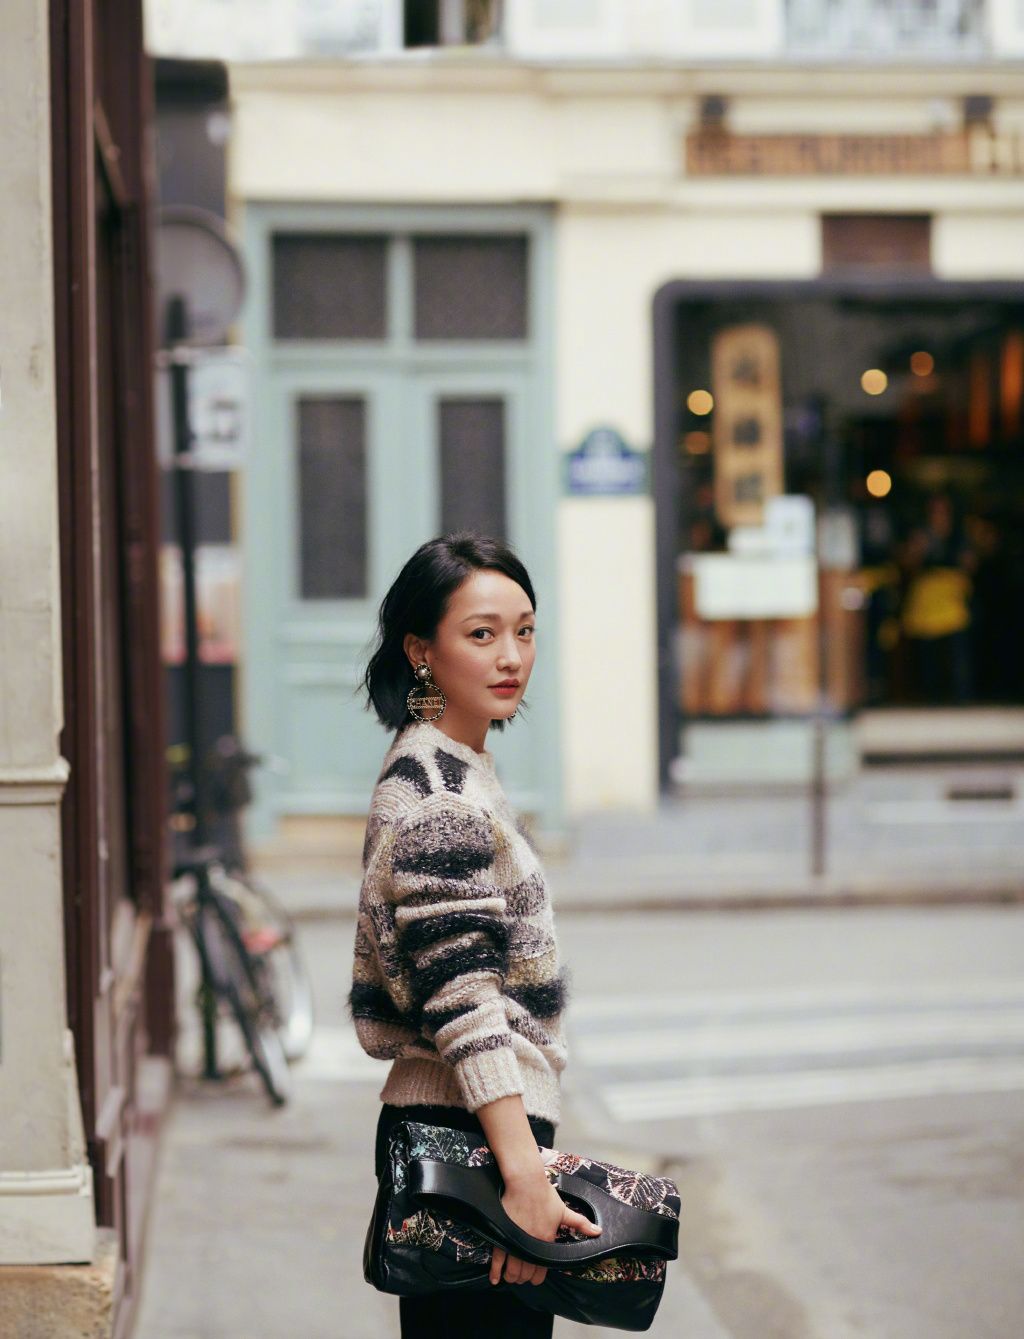 Châu Tấn có sự thấu cảm với giá trị thương hiệu Chanel: Mạnh mẽ nhưng vẫn đầy nữ tính và thanh tao.